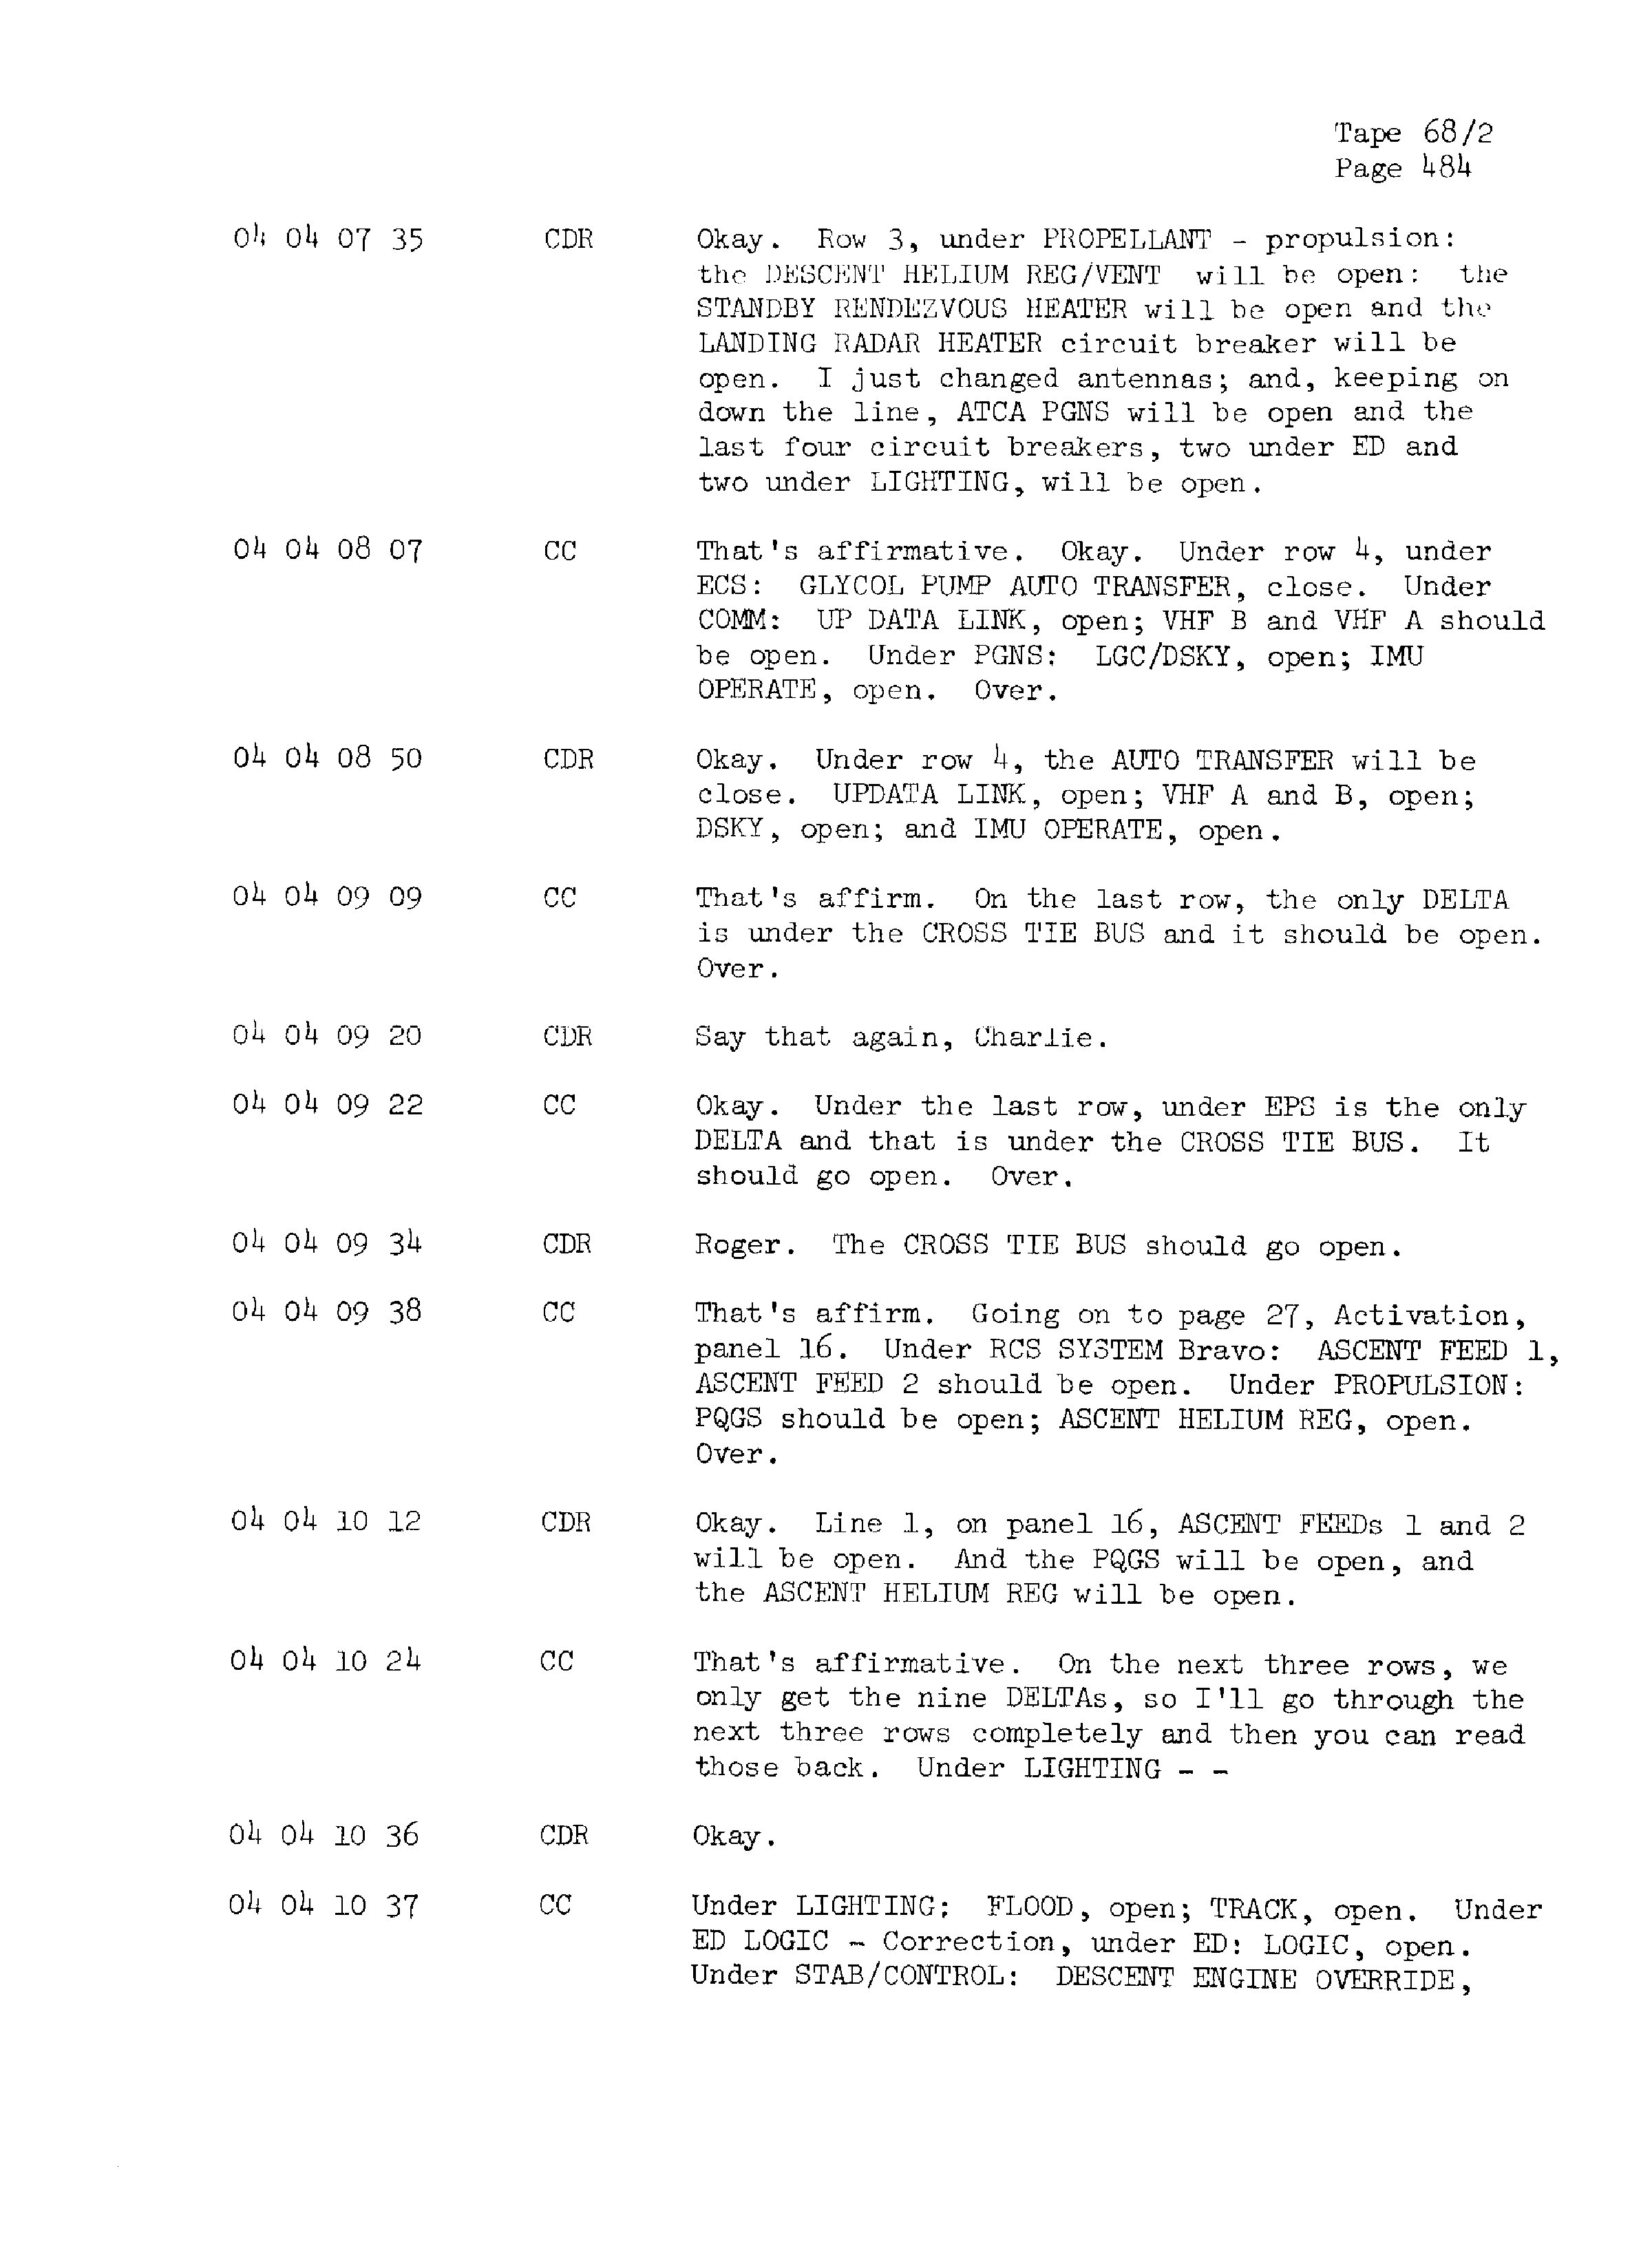 Page 491 of Apollo 13’s original transcript